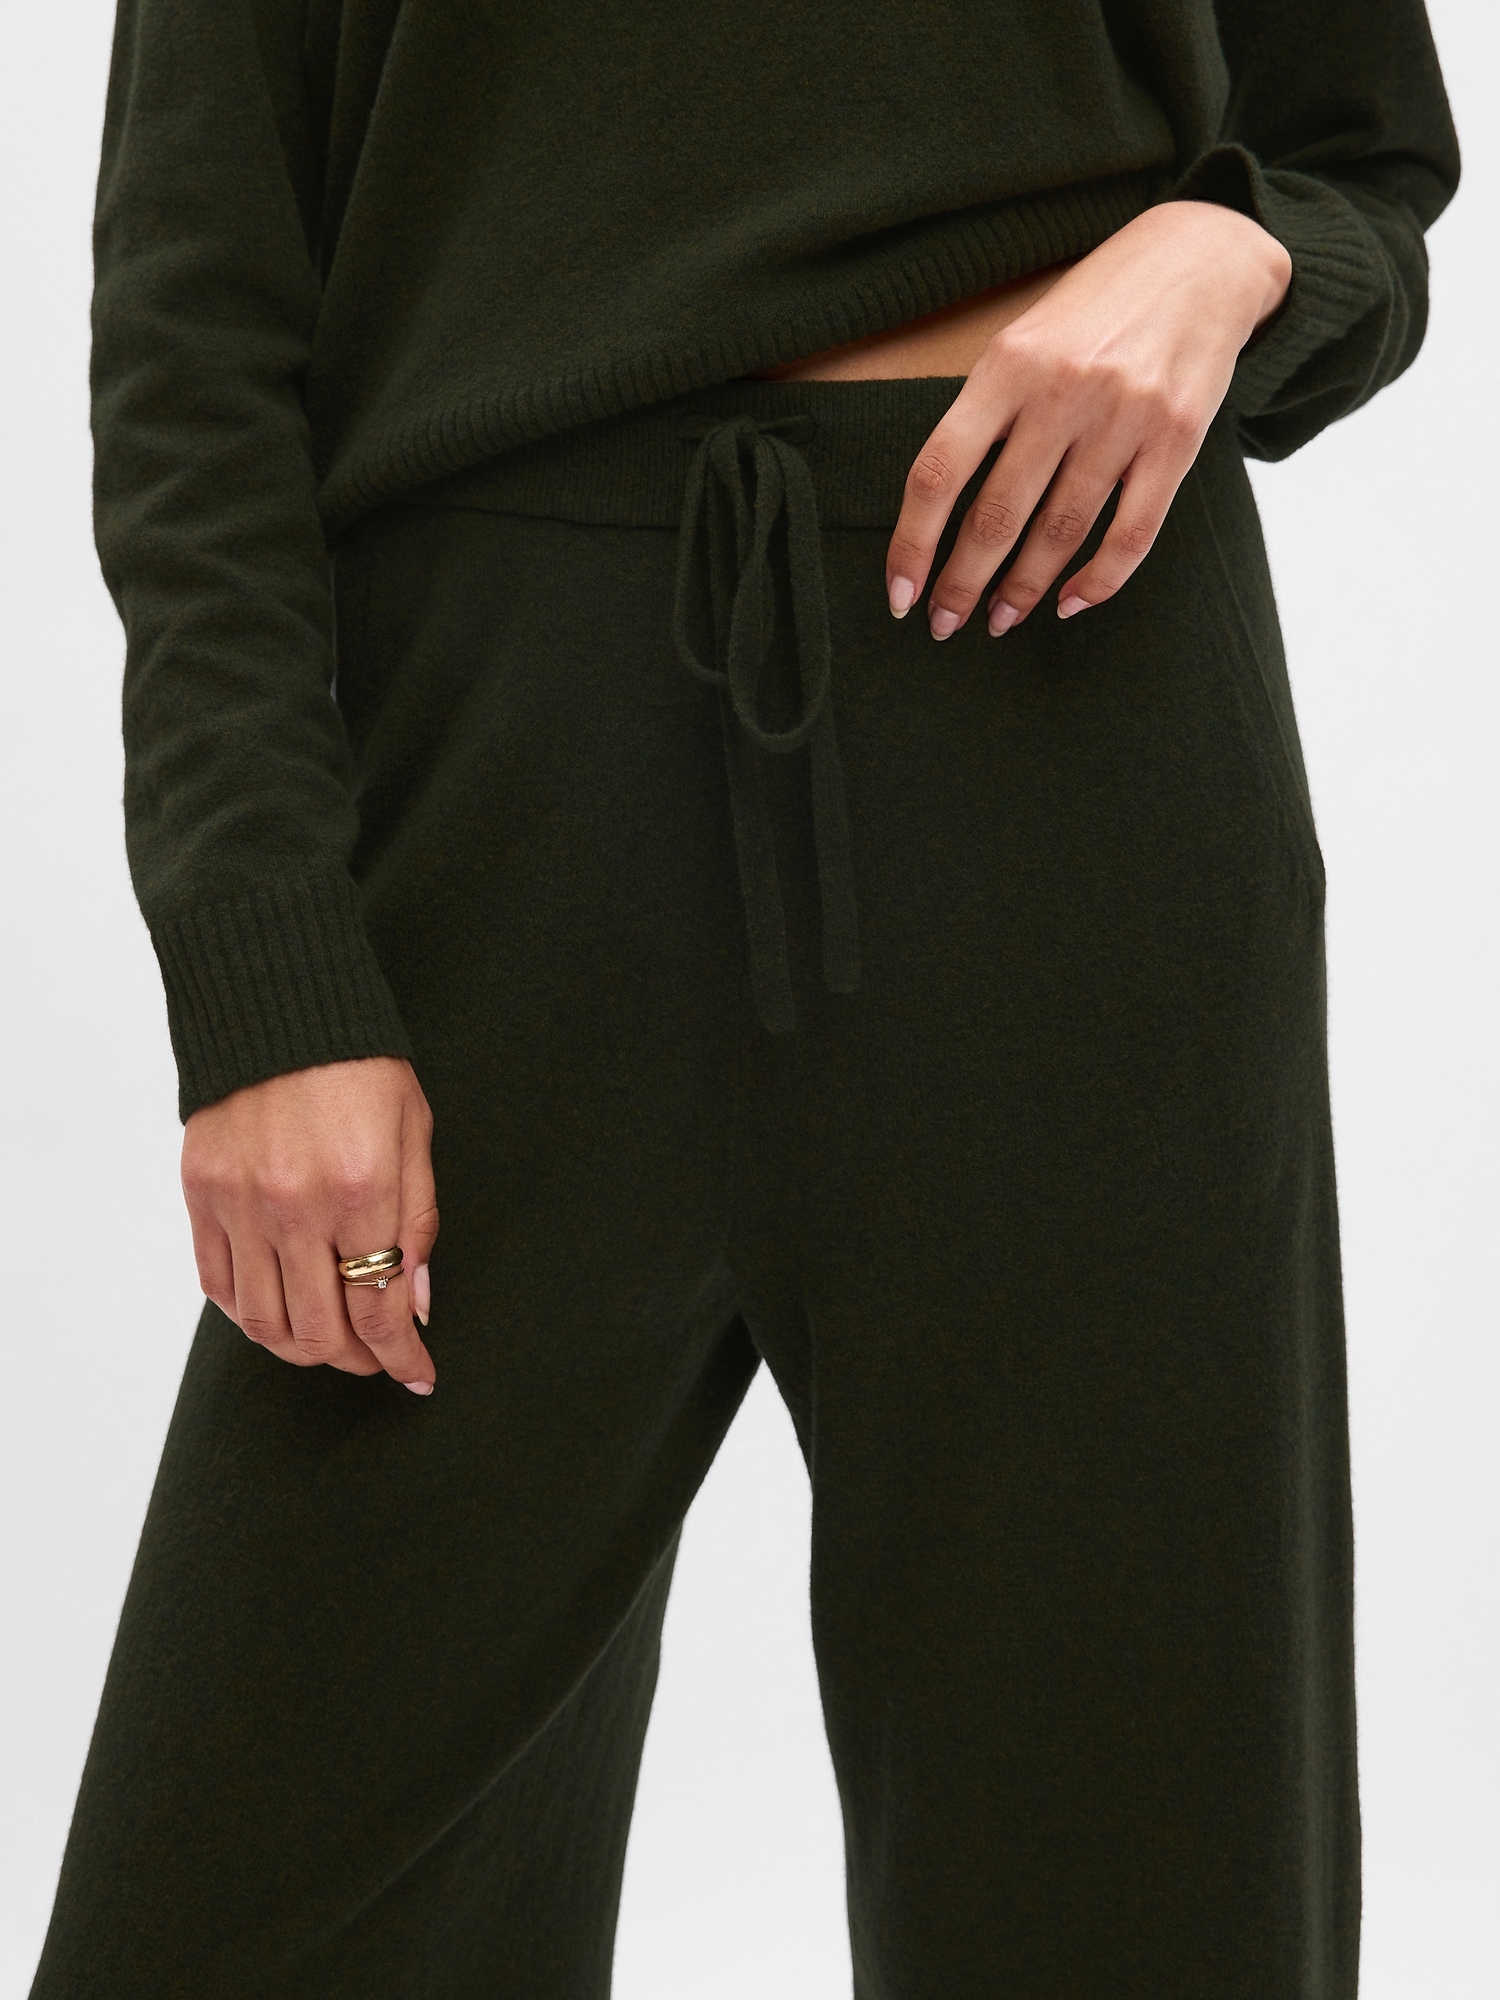 CashSoft Sweater Pants | Gap